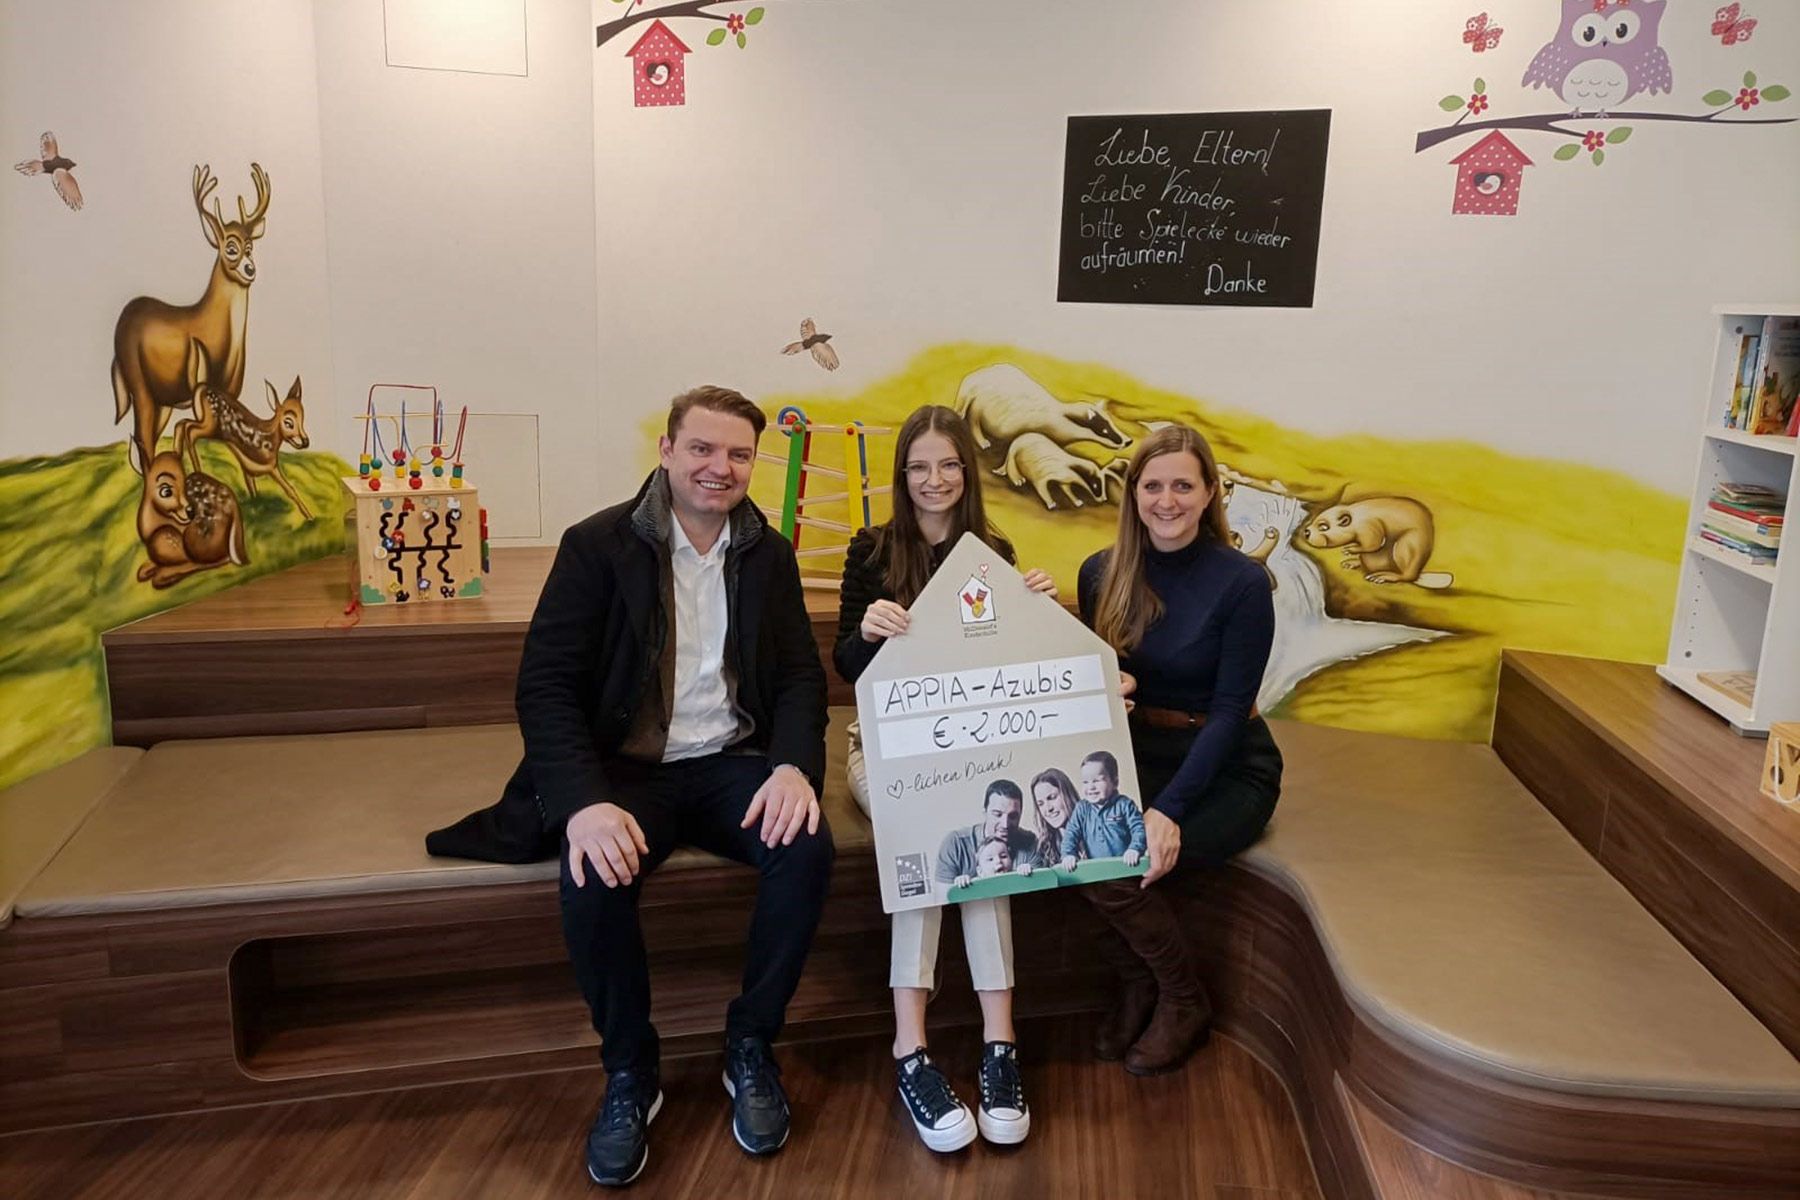 APPIA bei der Spendenübergabe von 2.000 € an die McDonald’s Kinderhilfe Stiftung